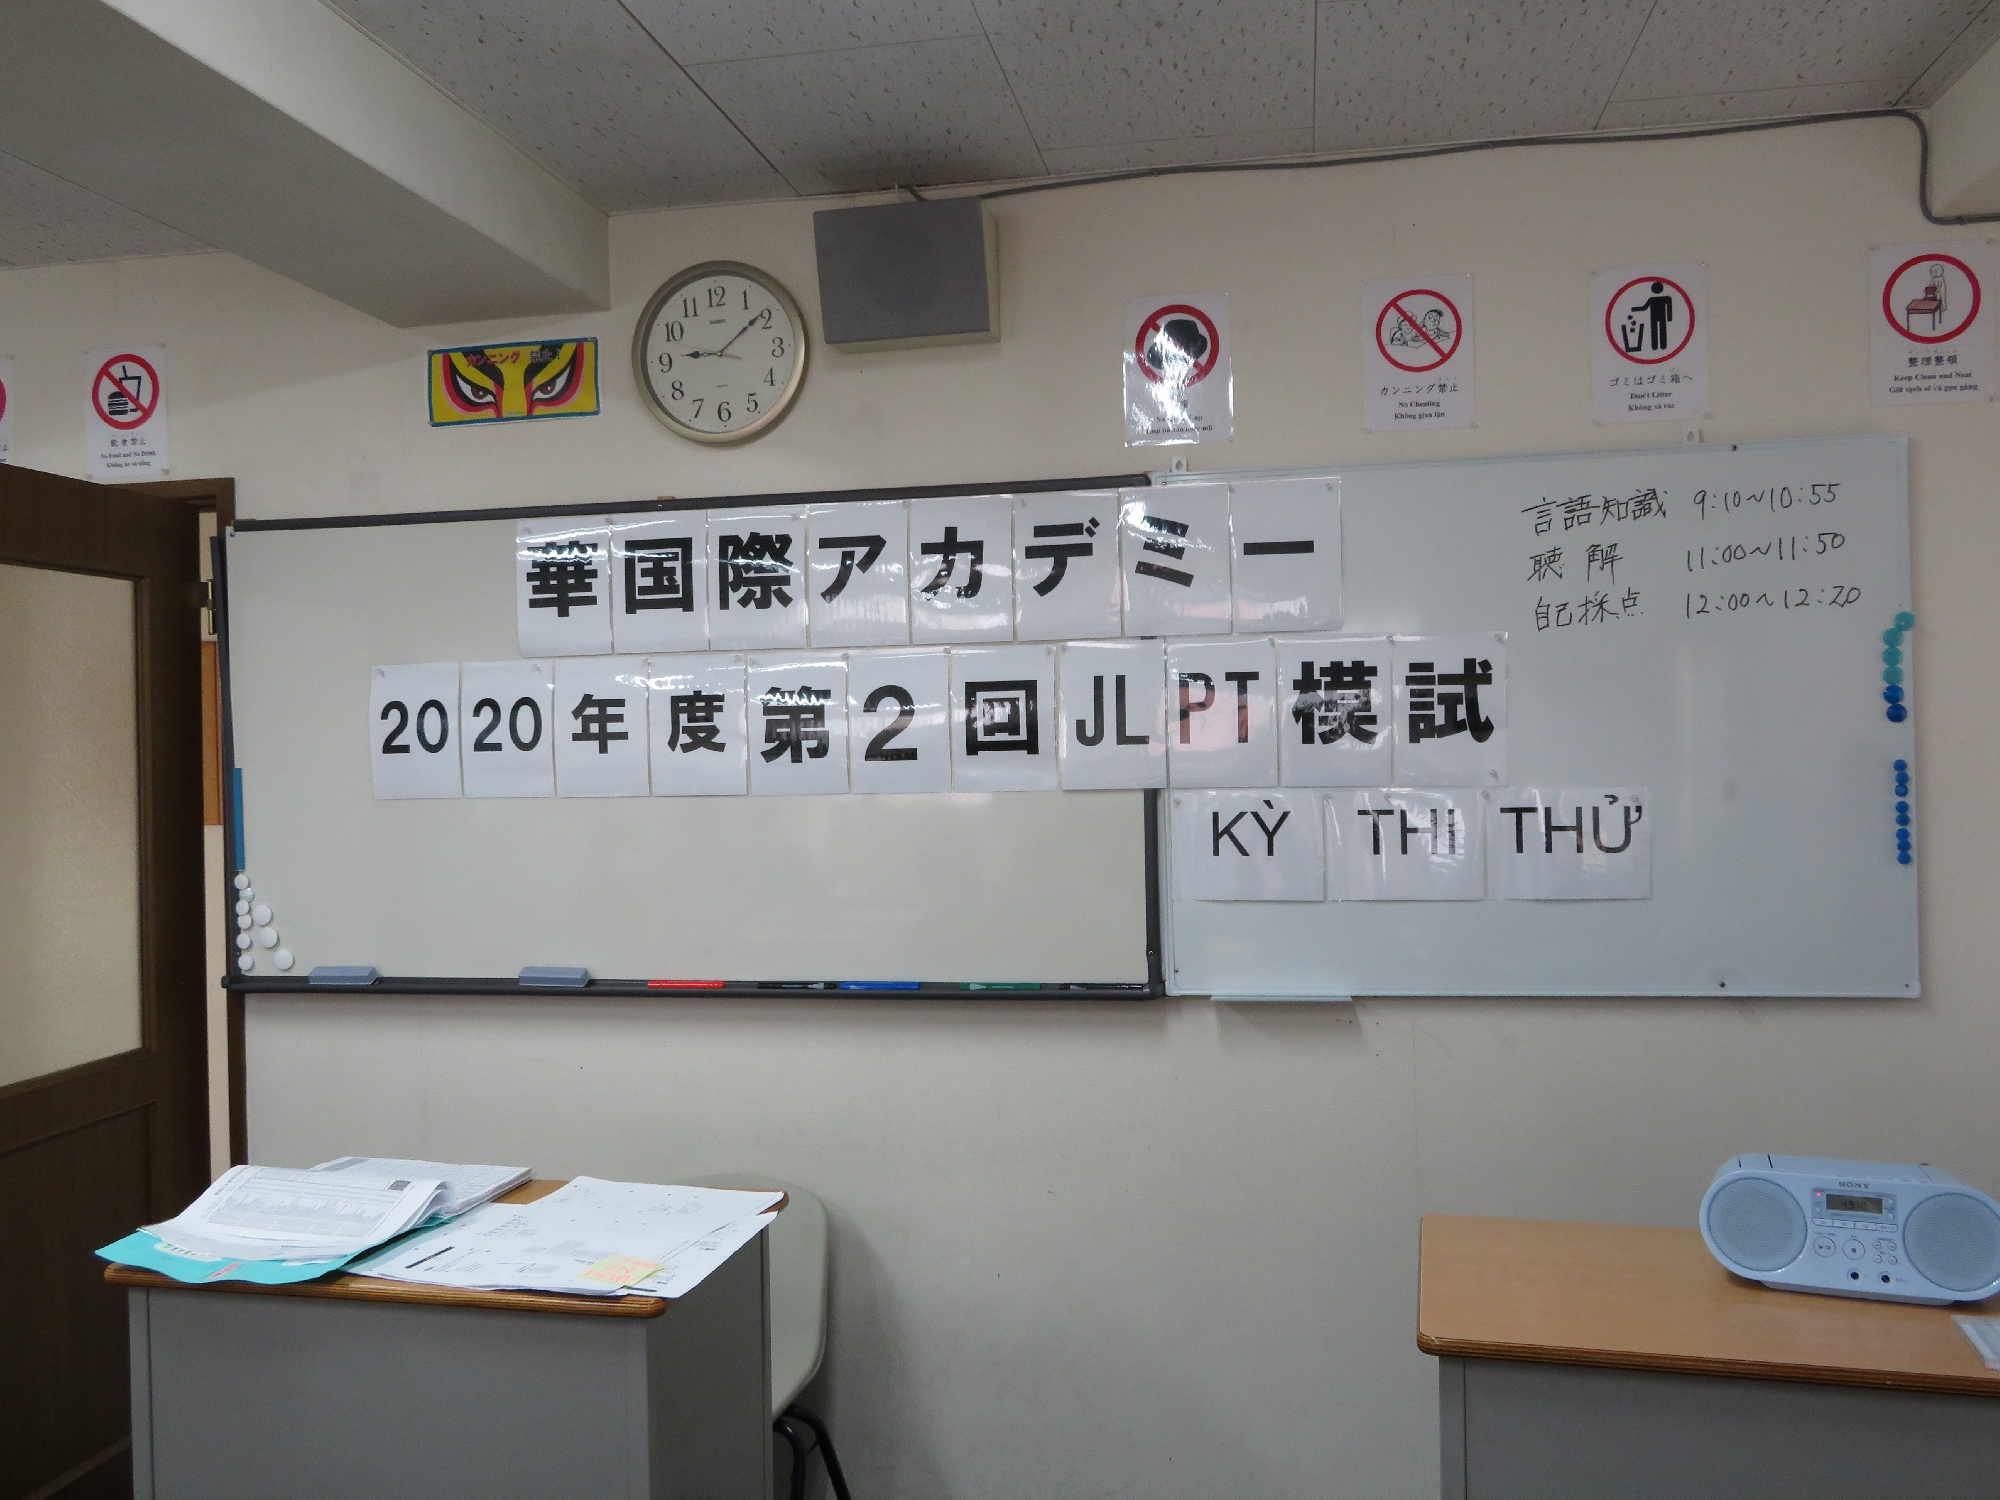 2020.6.30校内日本語能力試験(JLPT)模擬試験　2020.6.30 School Japanese Language Proficiency Test (JLPT) Mock Test